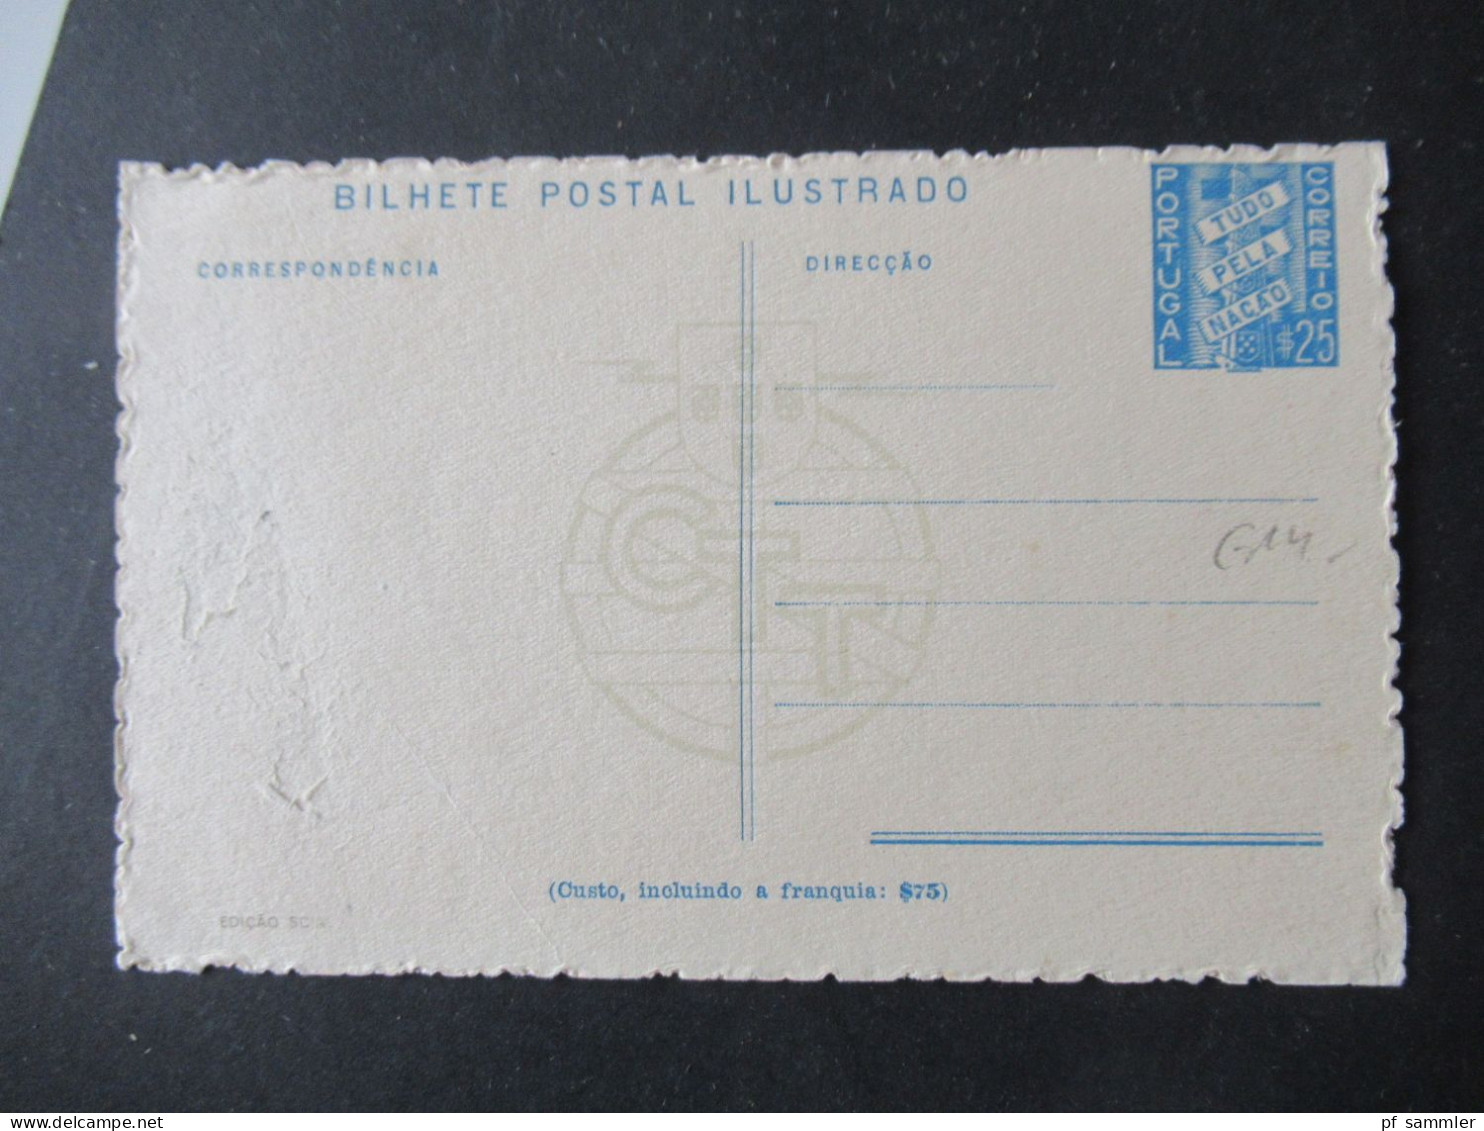 Portugal 1937 Bild Ganzsachen Bilhete Postal Ilustrado Edicao Scial / CTT / 3 Verschiedene Motive / Ugebraucht - Postal Stationery